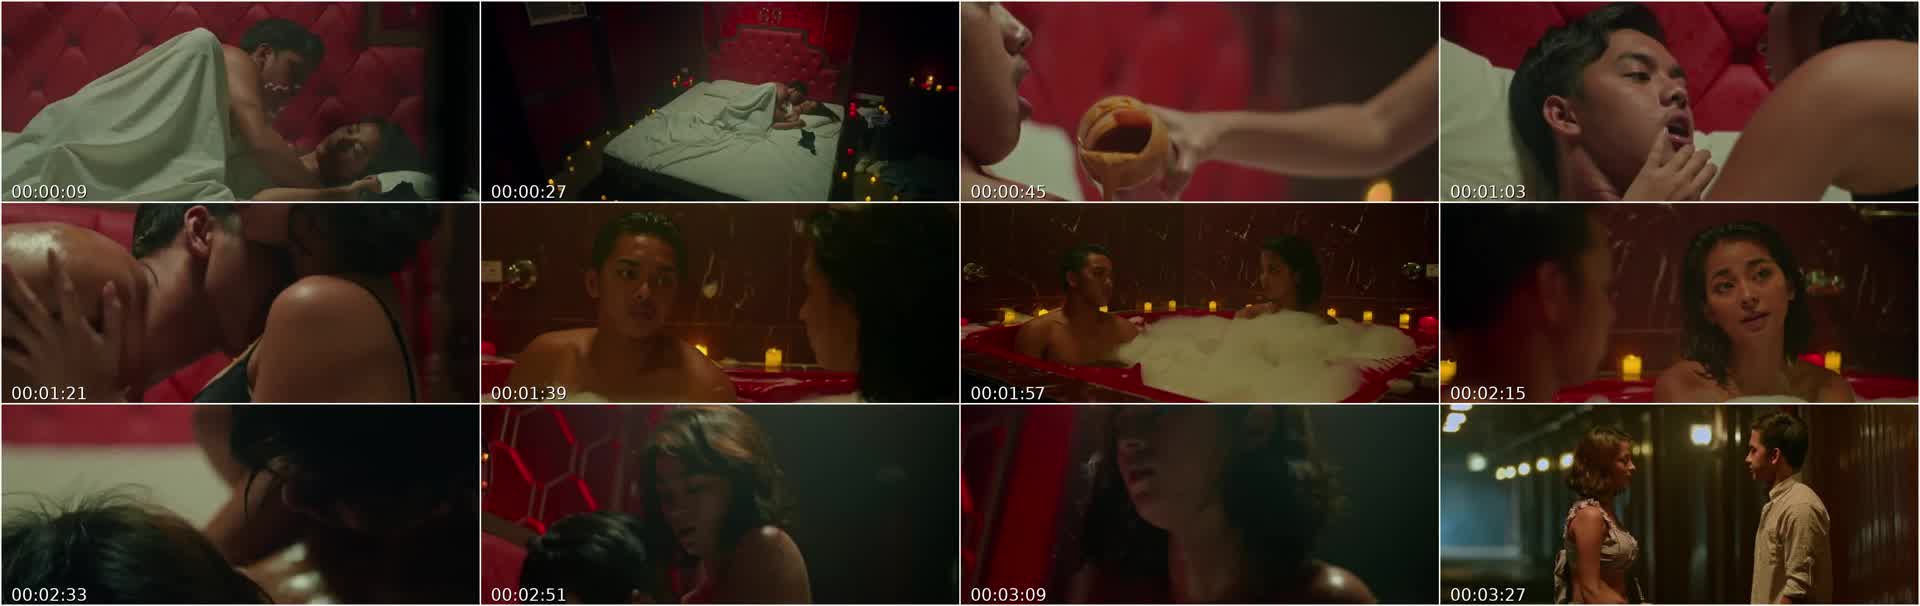 Aj raval sex scene in taya movie